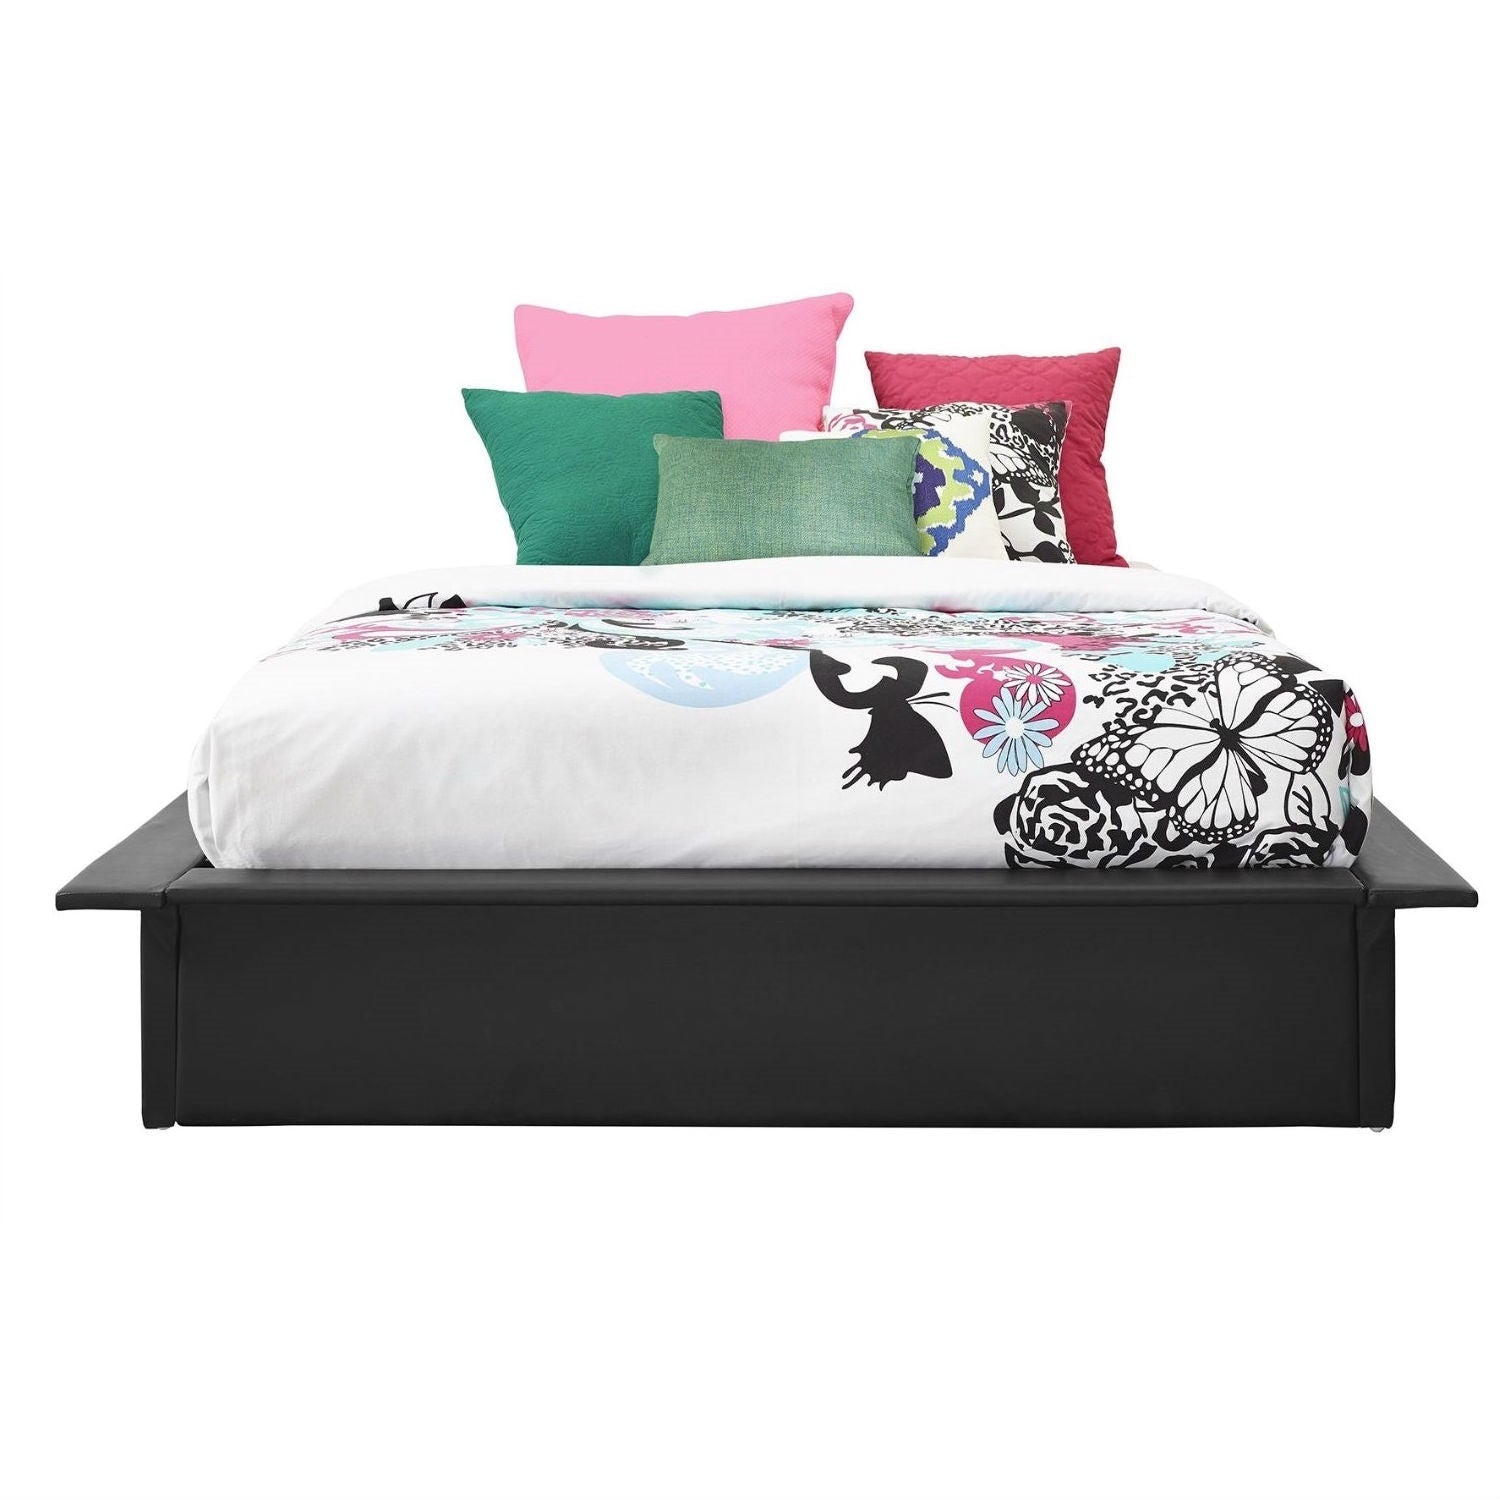 Bedroom > Bed Frames > Platform Beds - Queen Modern Black Faux Leather Platform Bed Frame With Wood Slats